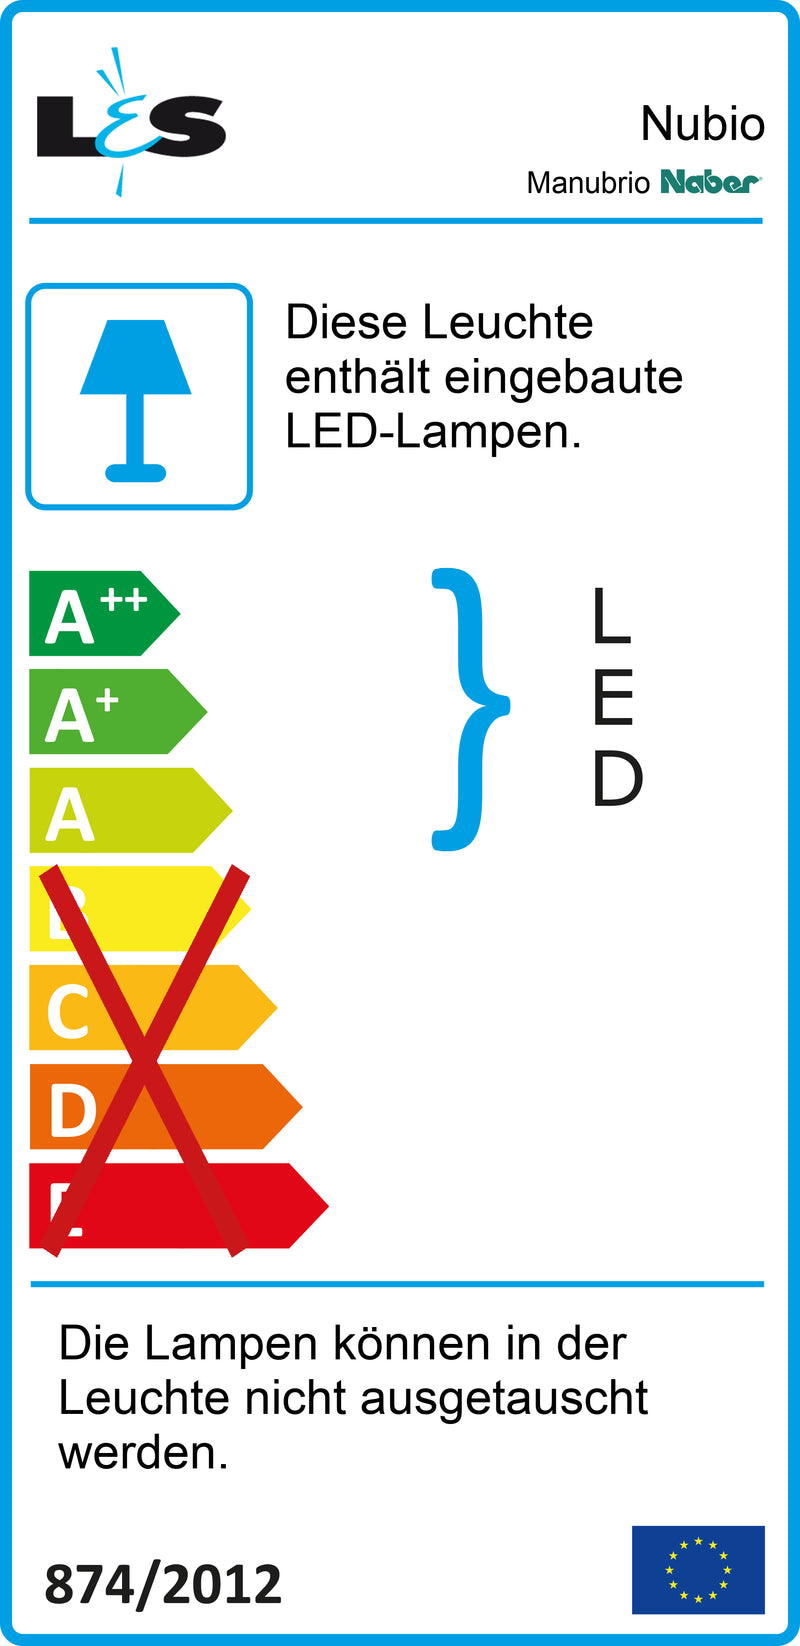 E-Label zu Zeichnung zu Manubrio LED Set 1 als Variante für Inselgröße bis max. 180 x 135 cm von Naber GmbH in der Kategorie Lichttechnik in Österreich auf conceptshop.at